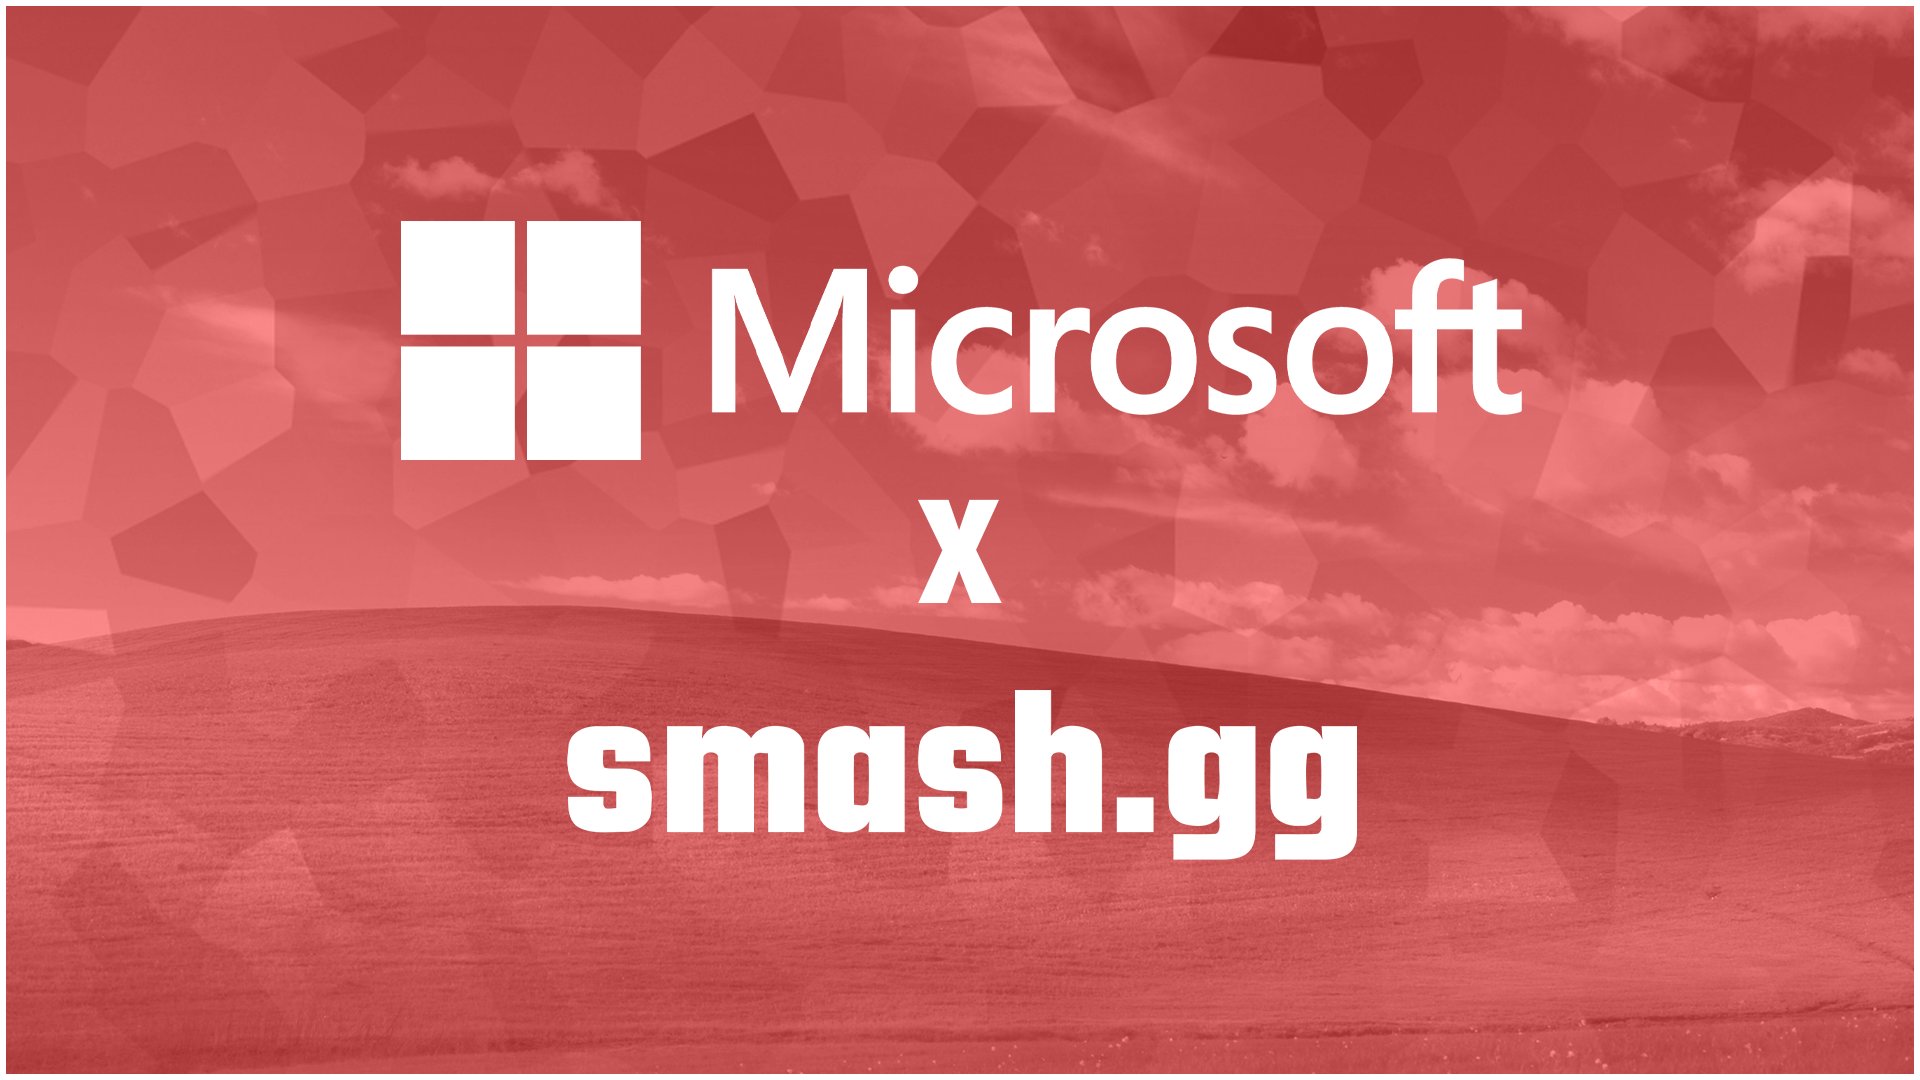 Microsoft adquiere la plataforma de Esports Smash.gg, GamersRD